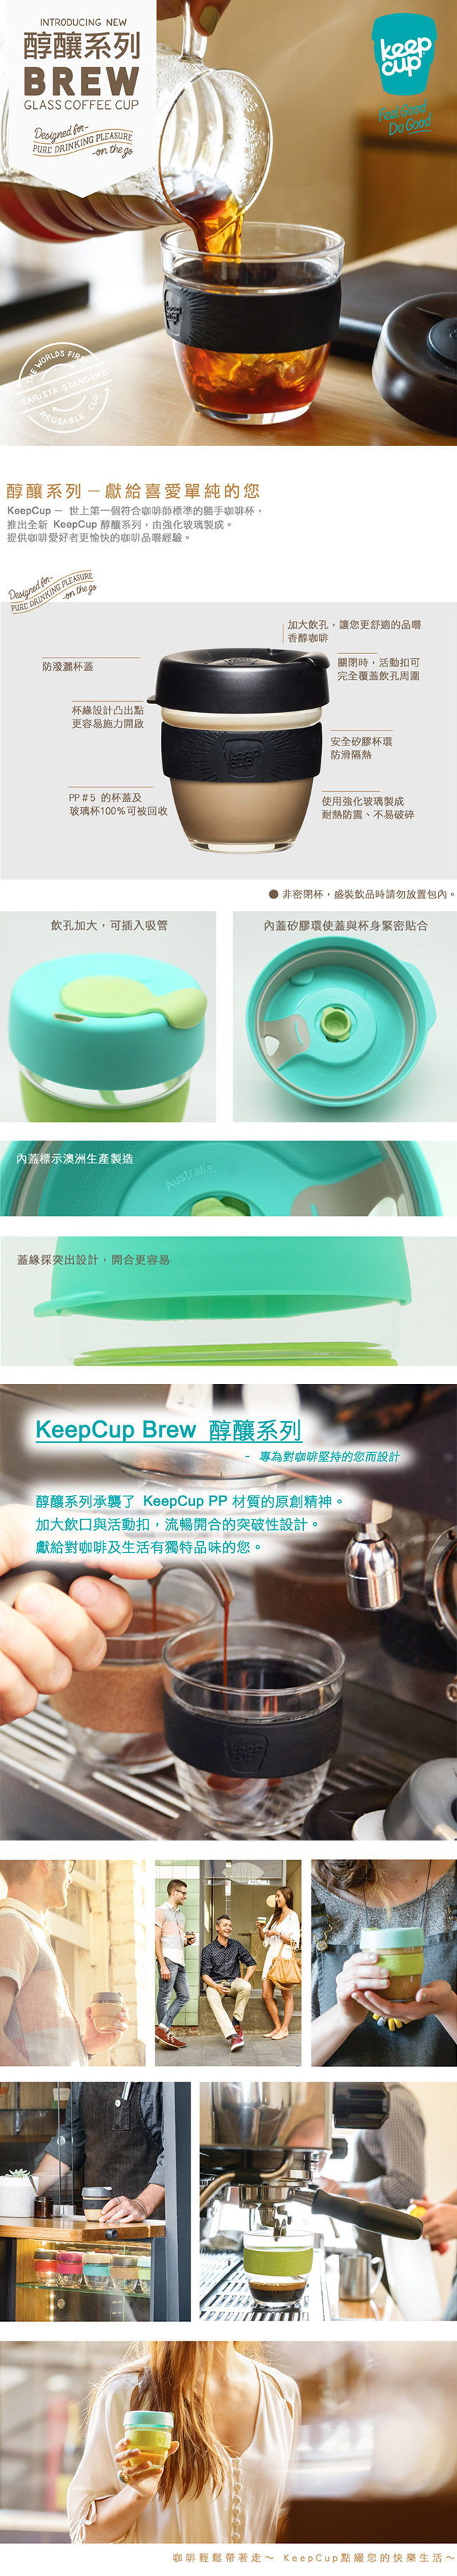 KeepCup 隨手咖啡杯 醇釀系列 M 粉橘